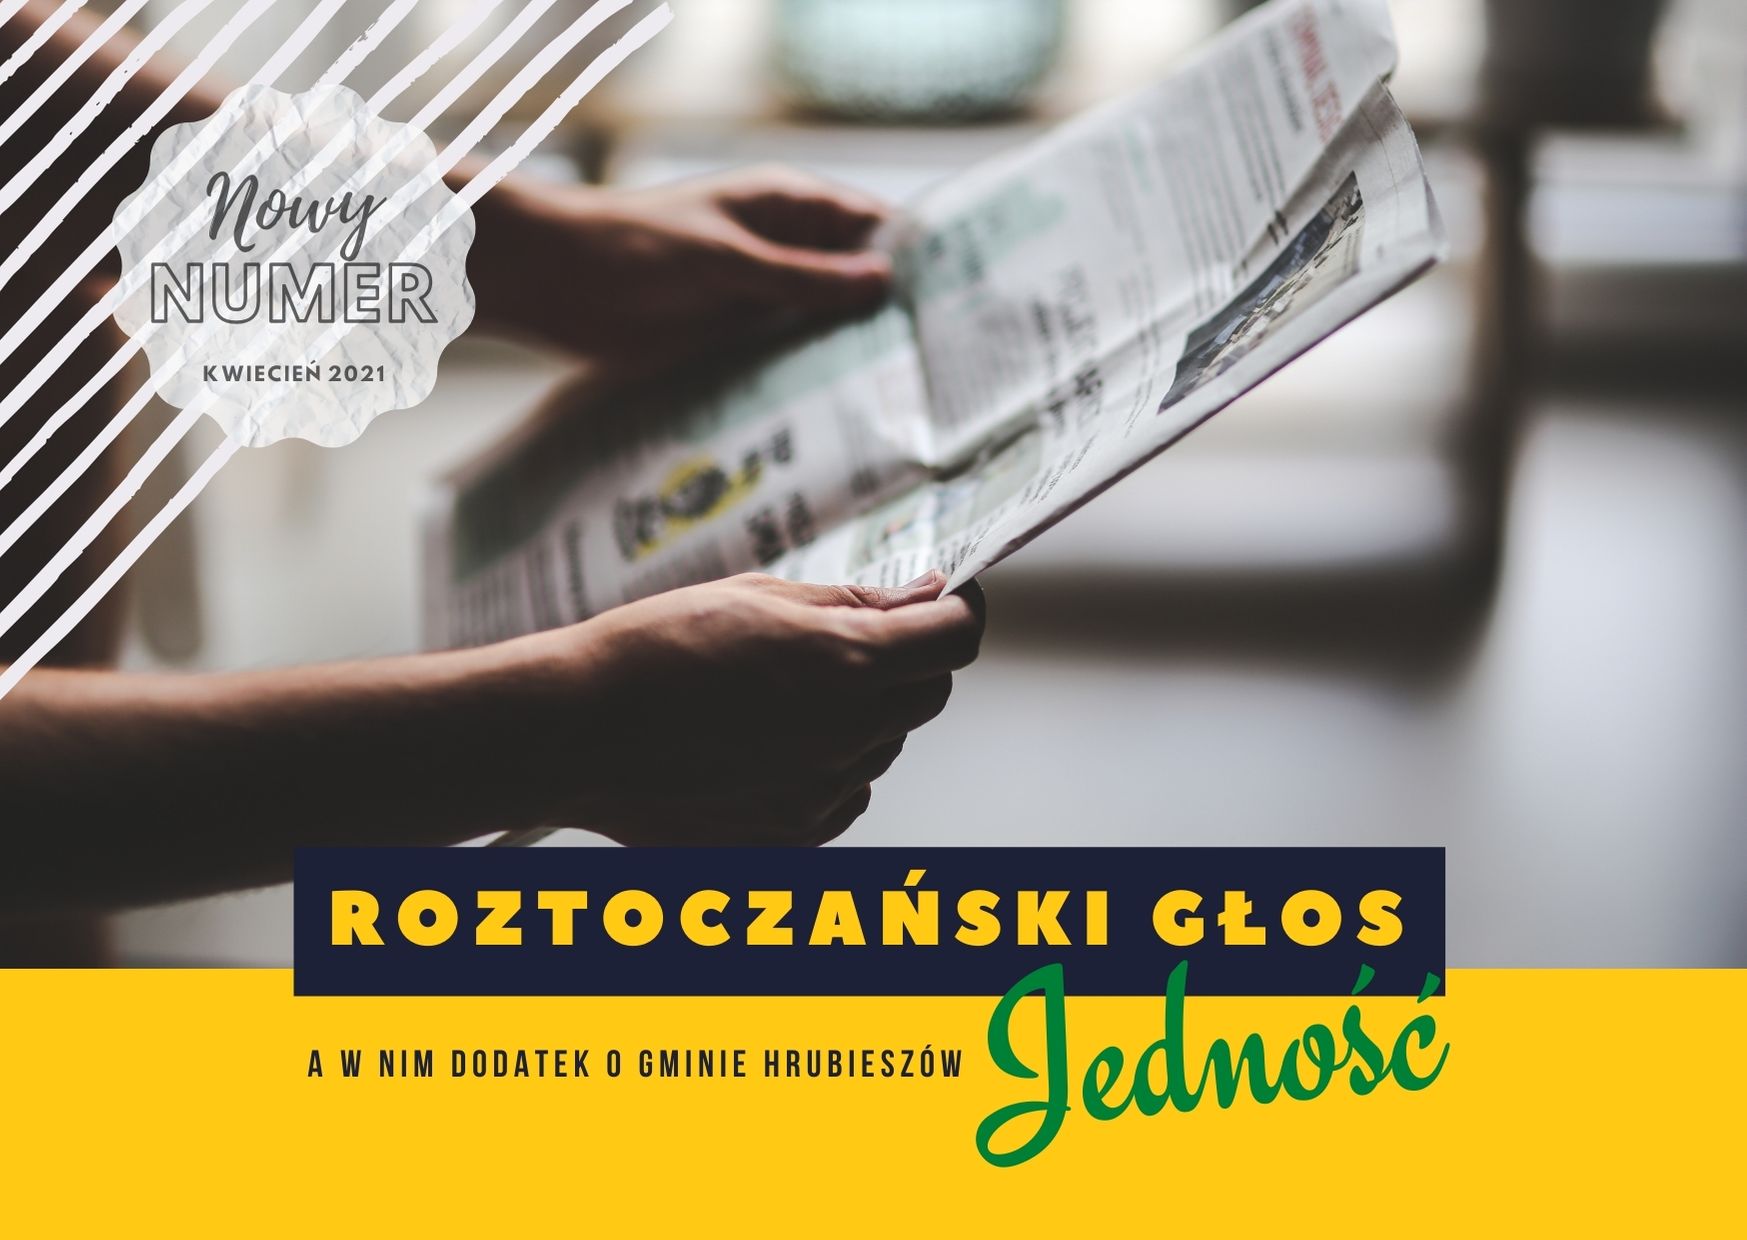 Zdjęcie dłoni, które trzymają otwartą gazetę, napis: roztoczański głos a w nim dodatek o gminie Hrubieszów Jedność